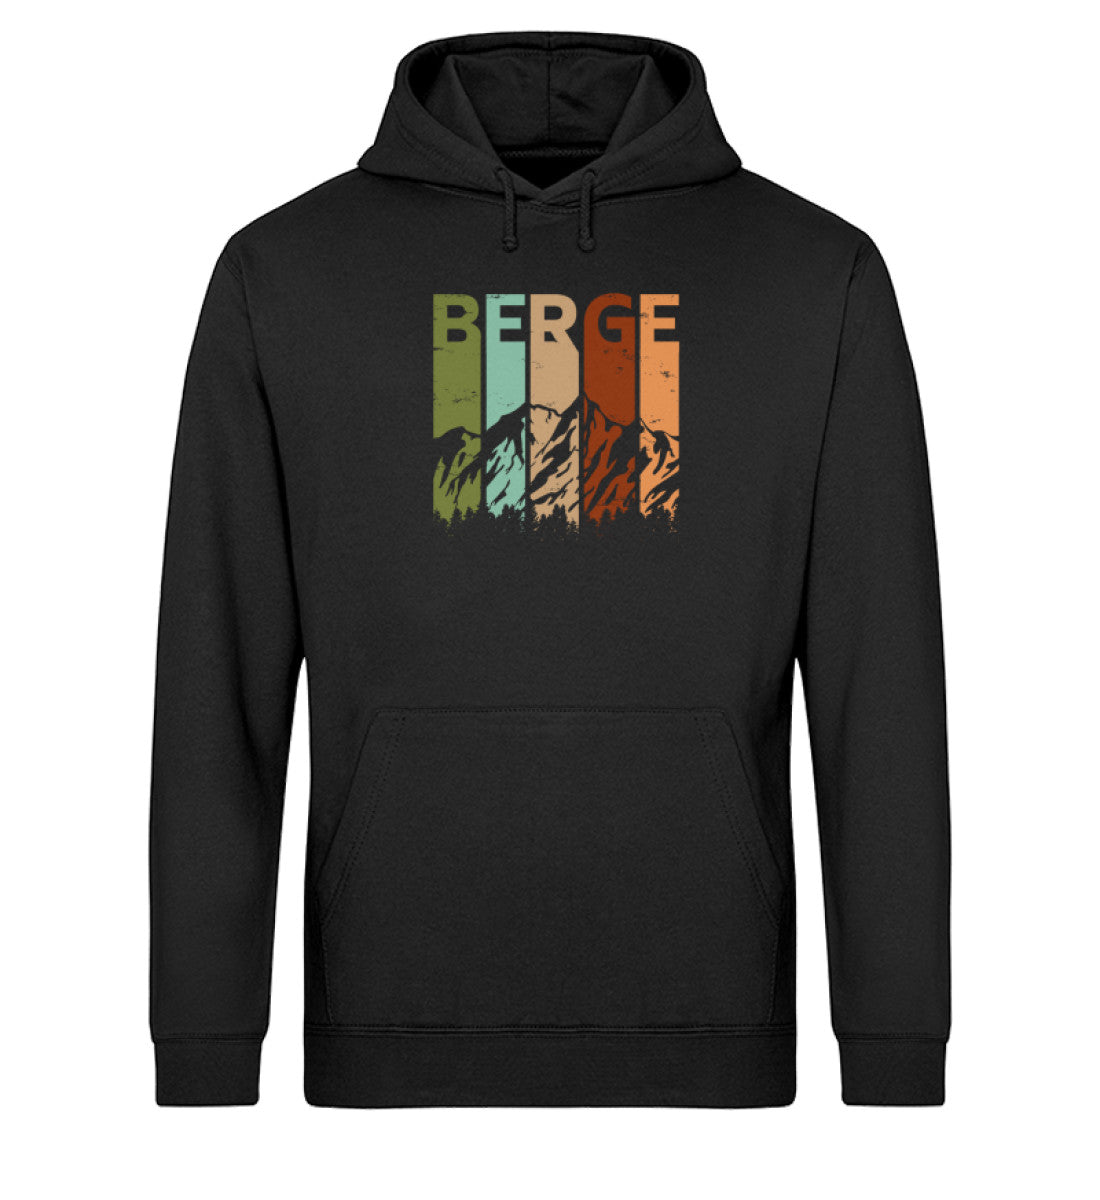 Berge - Vintage - Unisex Organic Hoodie berge Schwarz